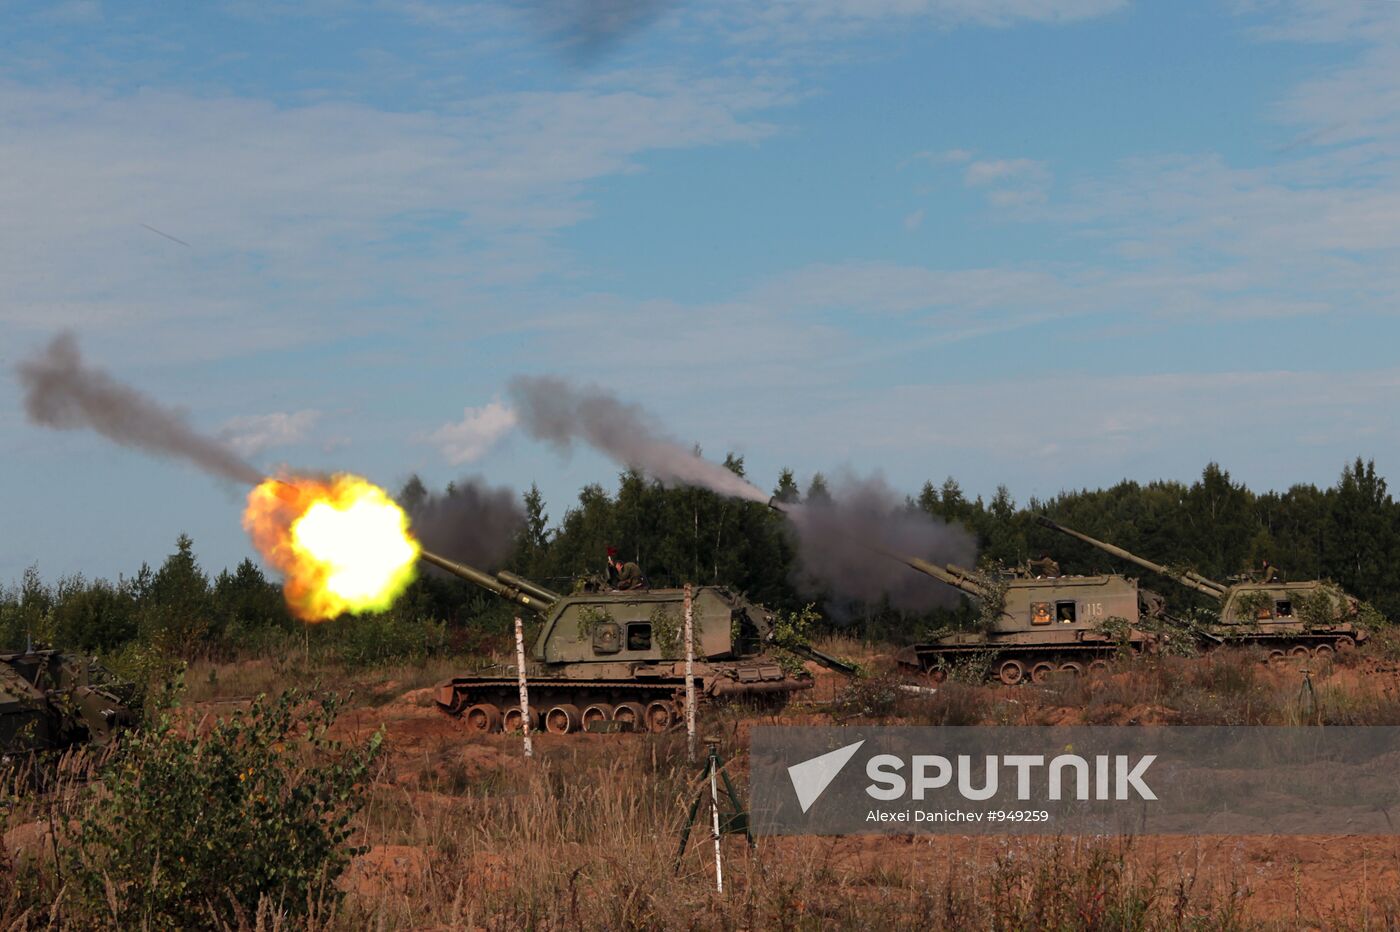 Artillery exercises in Leningrad Region